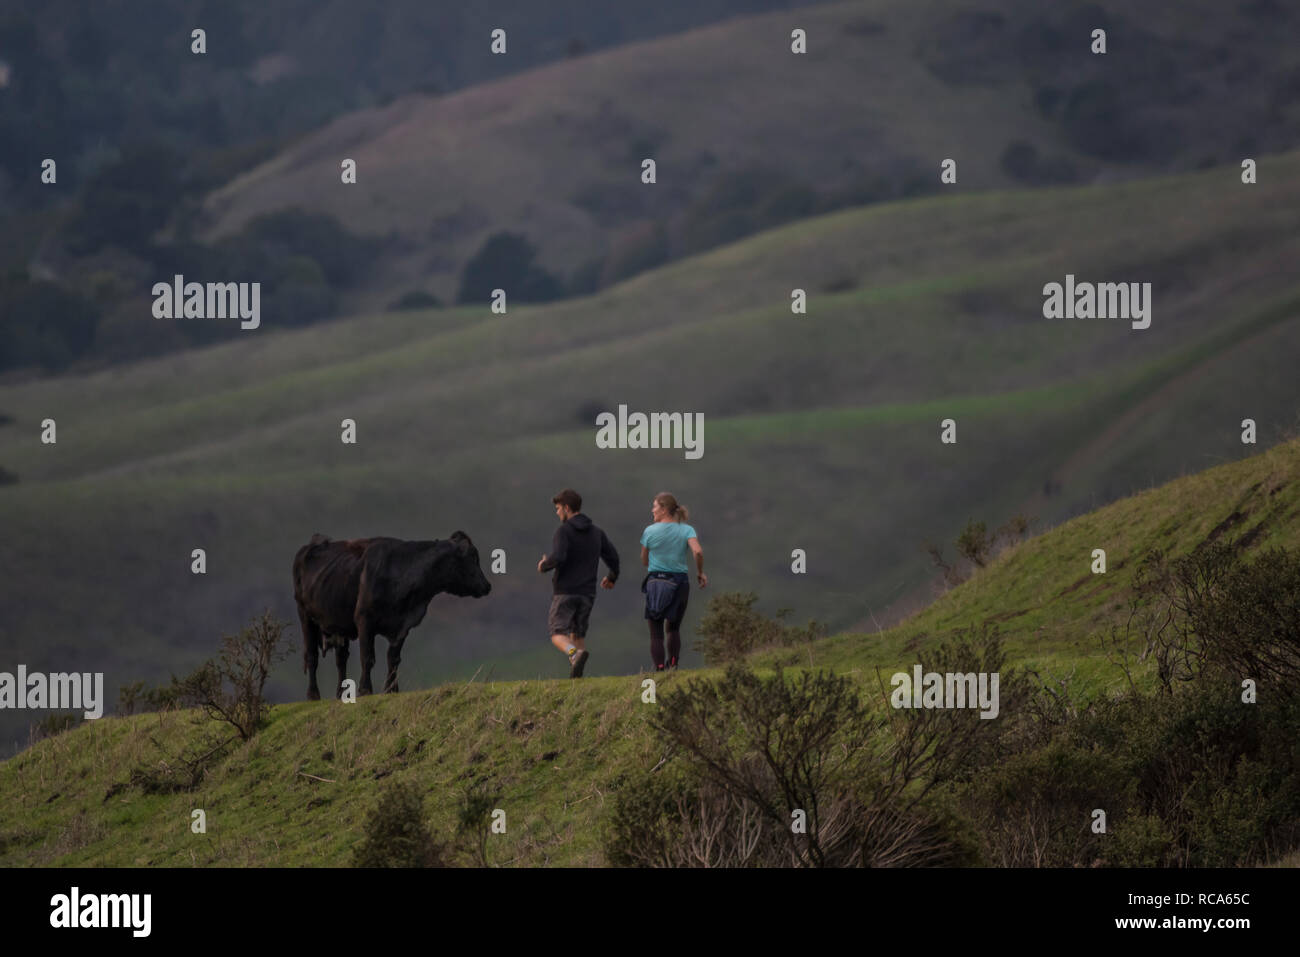 Una pareja corre por una vaca en el verde de las colinas de California, la vaca mantiene una estrecha vigilancia sobre ellos como lo hacen. Foto de stock